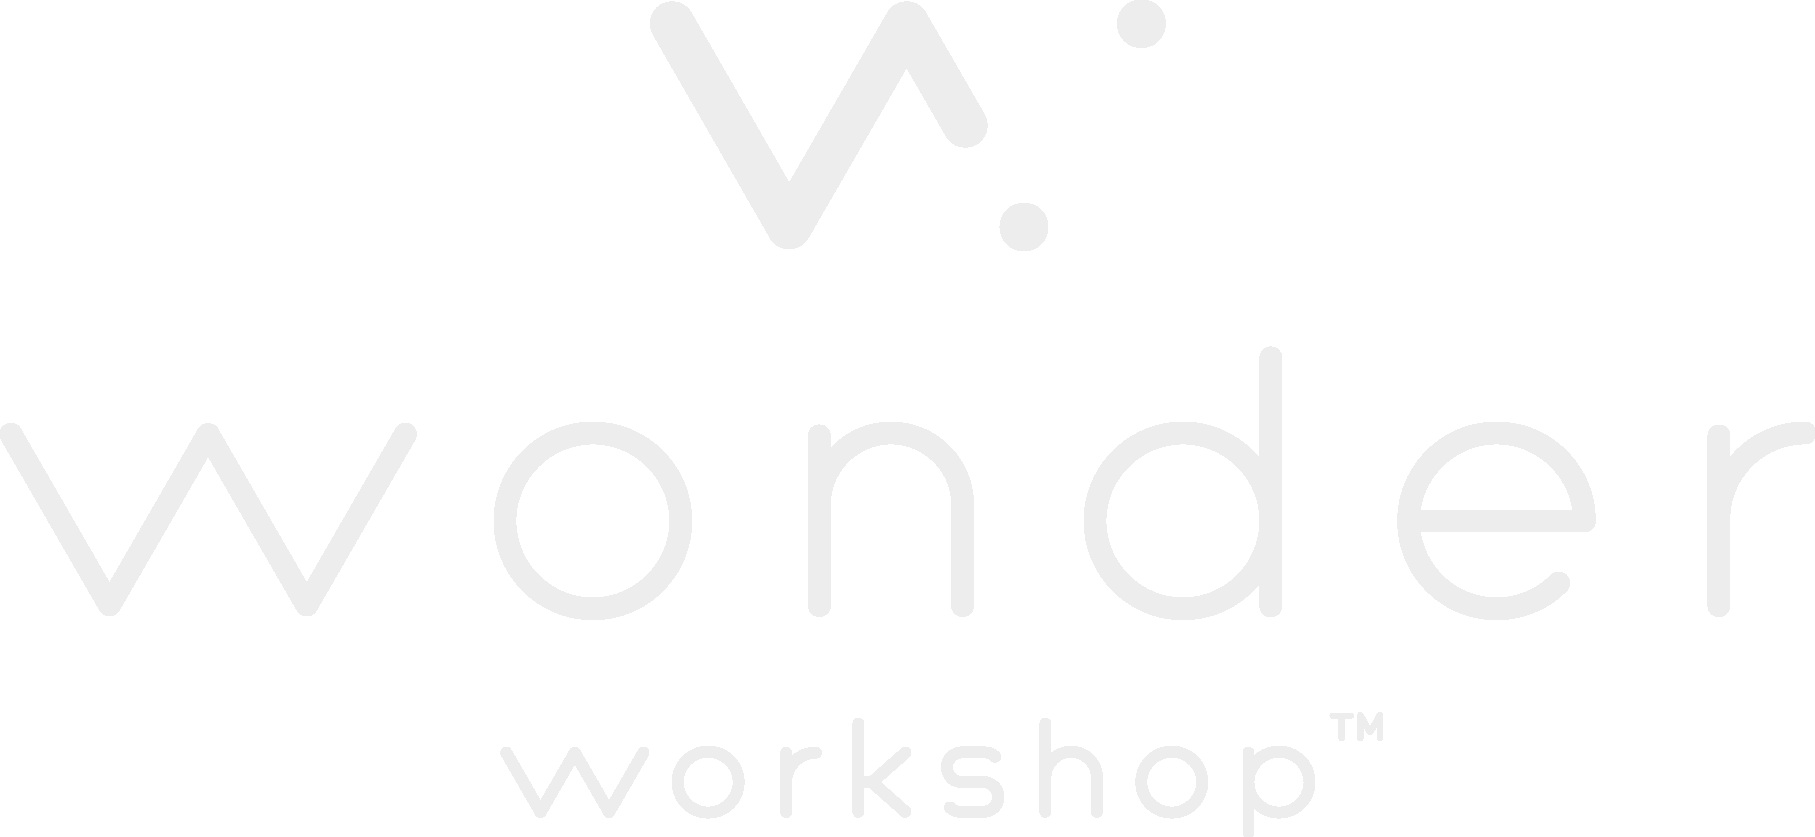 wonderworkshop_logo.png